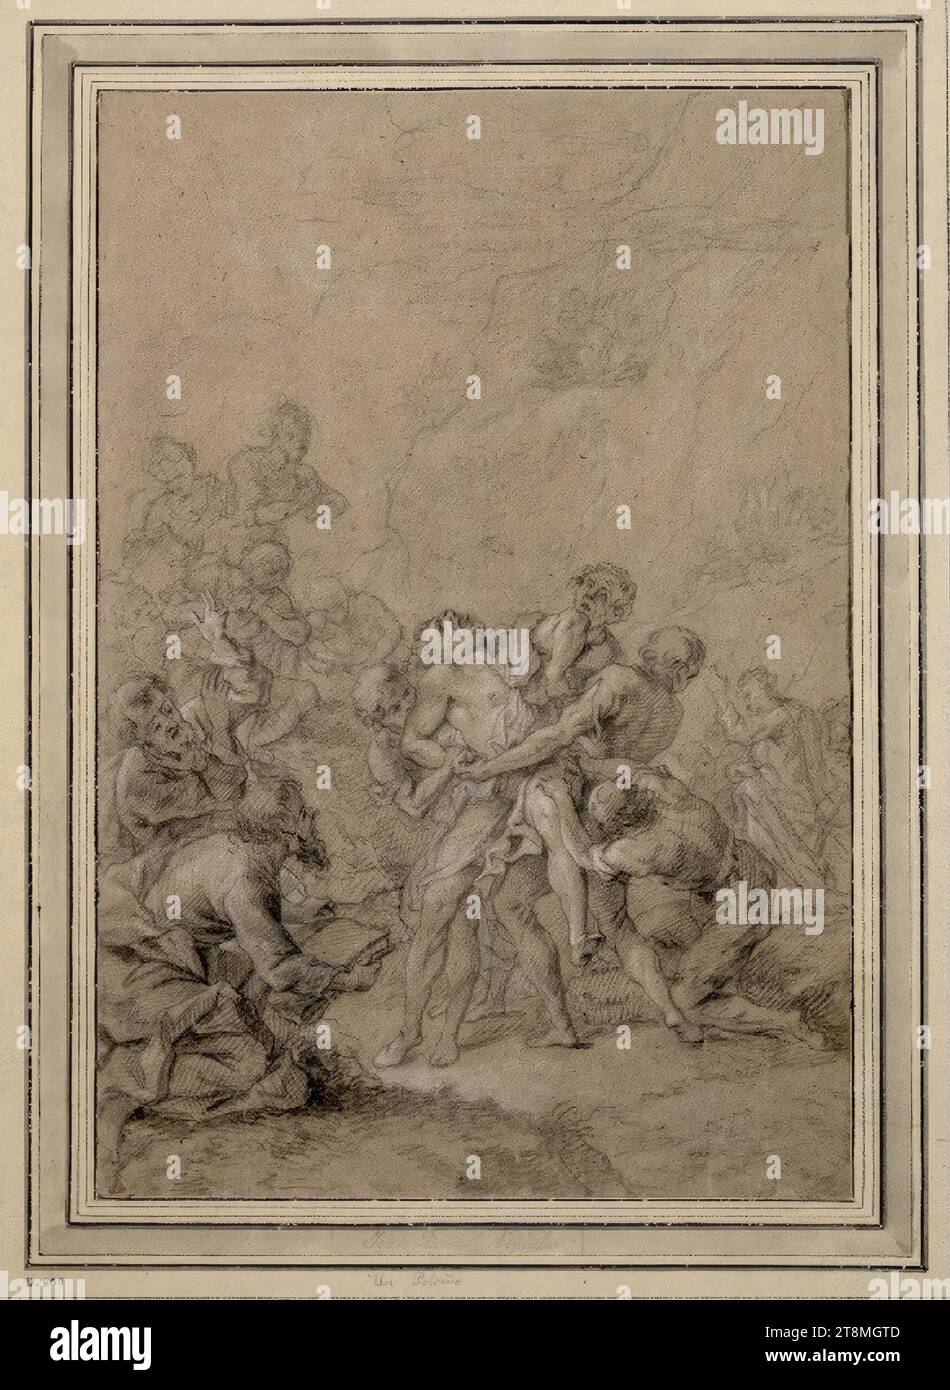 Un maniaco è portato ai santi apostoli Pietro e Paolo per la guarigione, Johann Daniel Preisler (Norimberga 1666 - 1737 Norimberga), disegno, gesso bianco e nero su carta marrone, 33,1 x 22,6 cm, l. e duca Alberto di Sassonia-Teschen Foto Stock